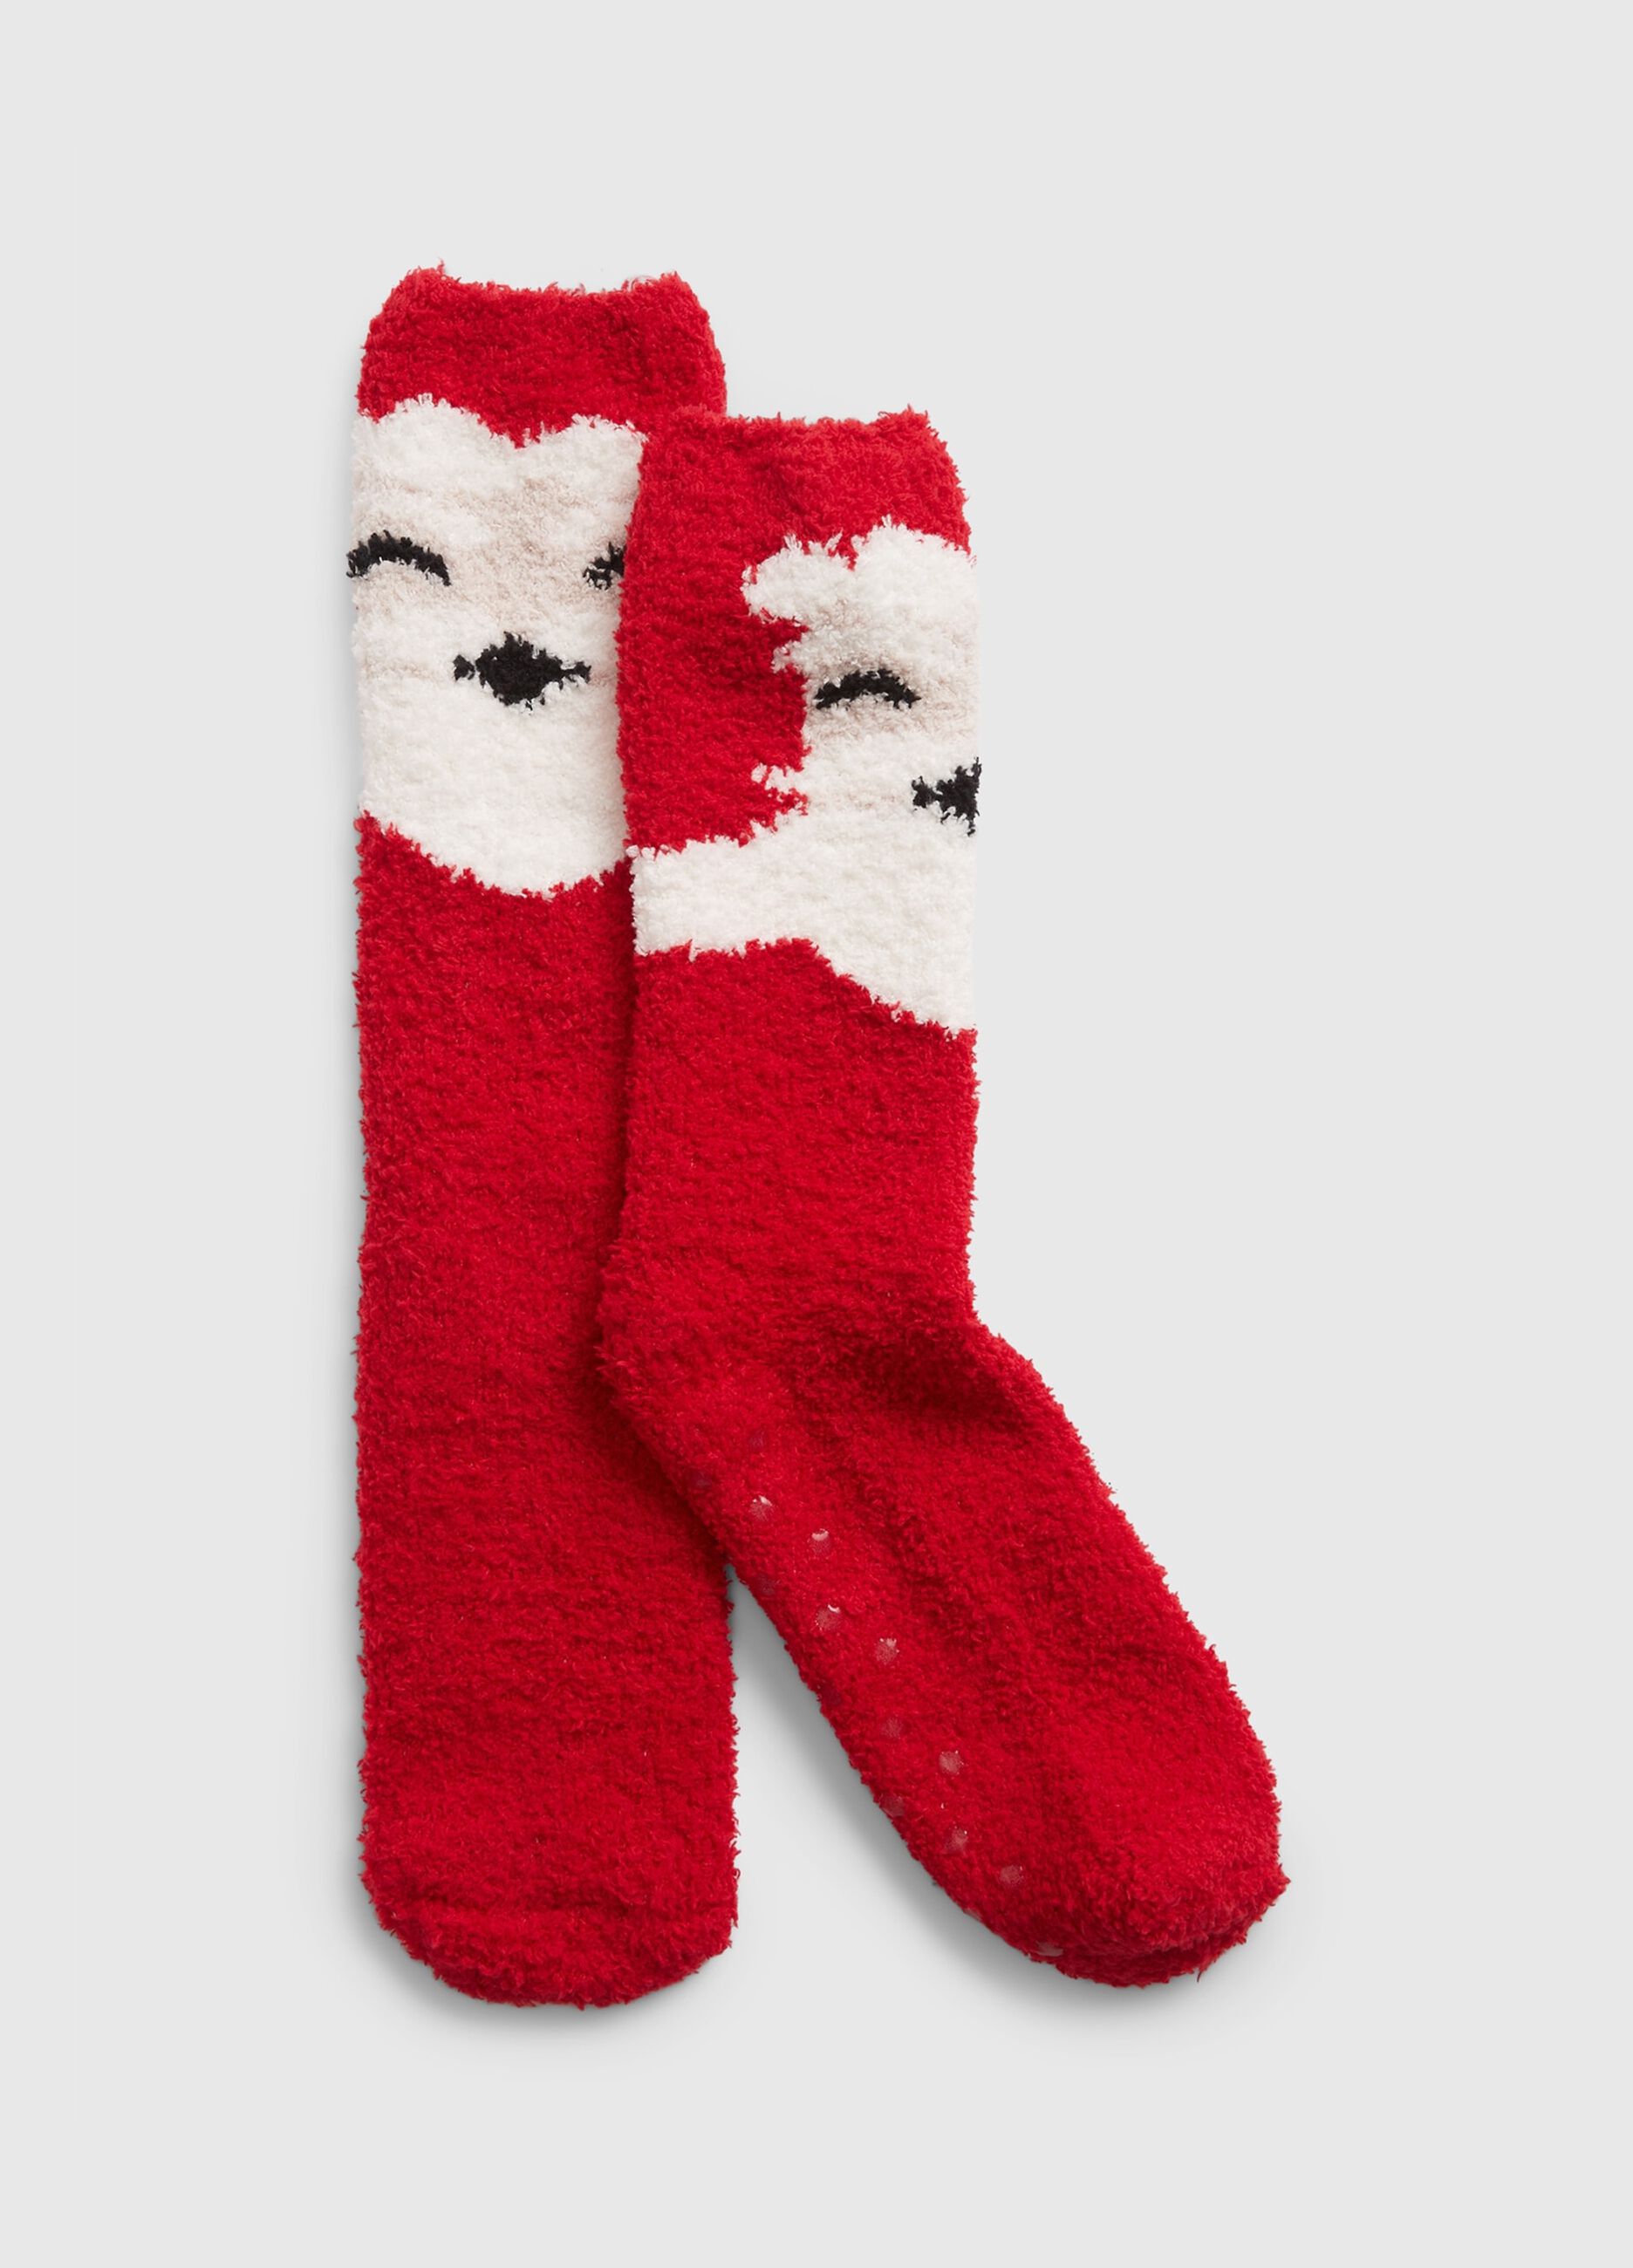 Slipper socks with Christmas design